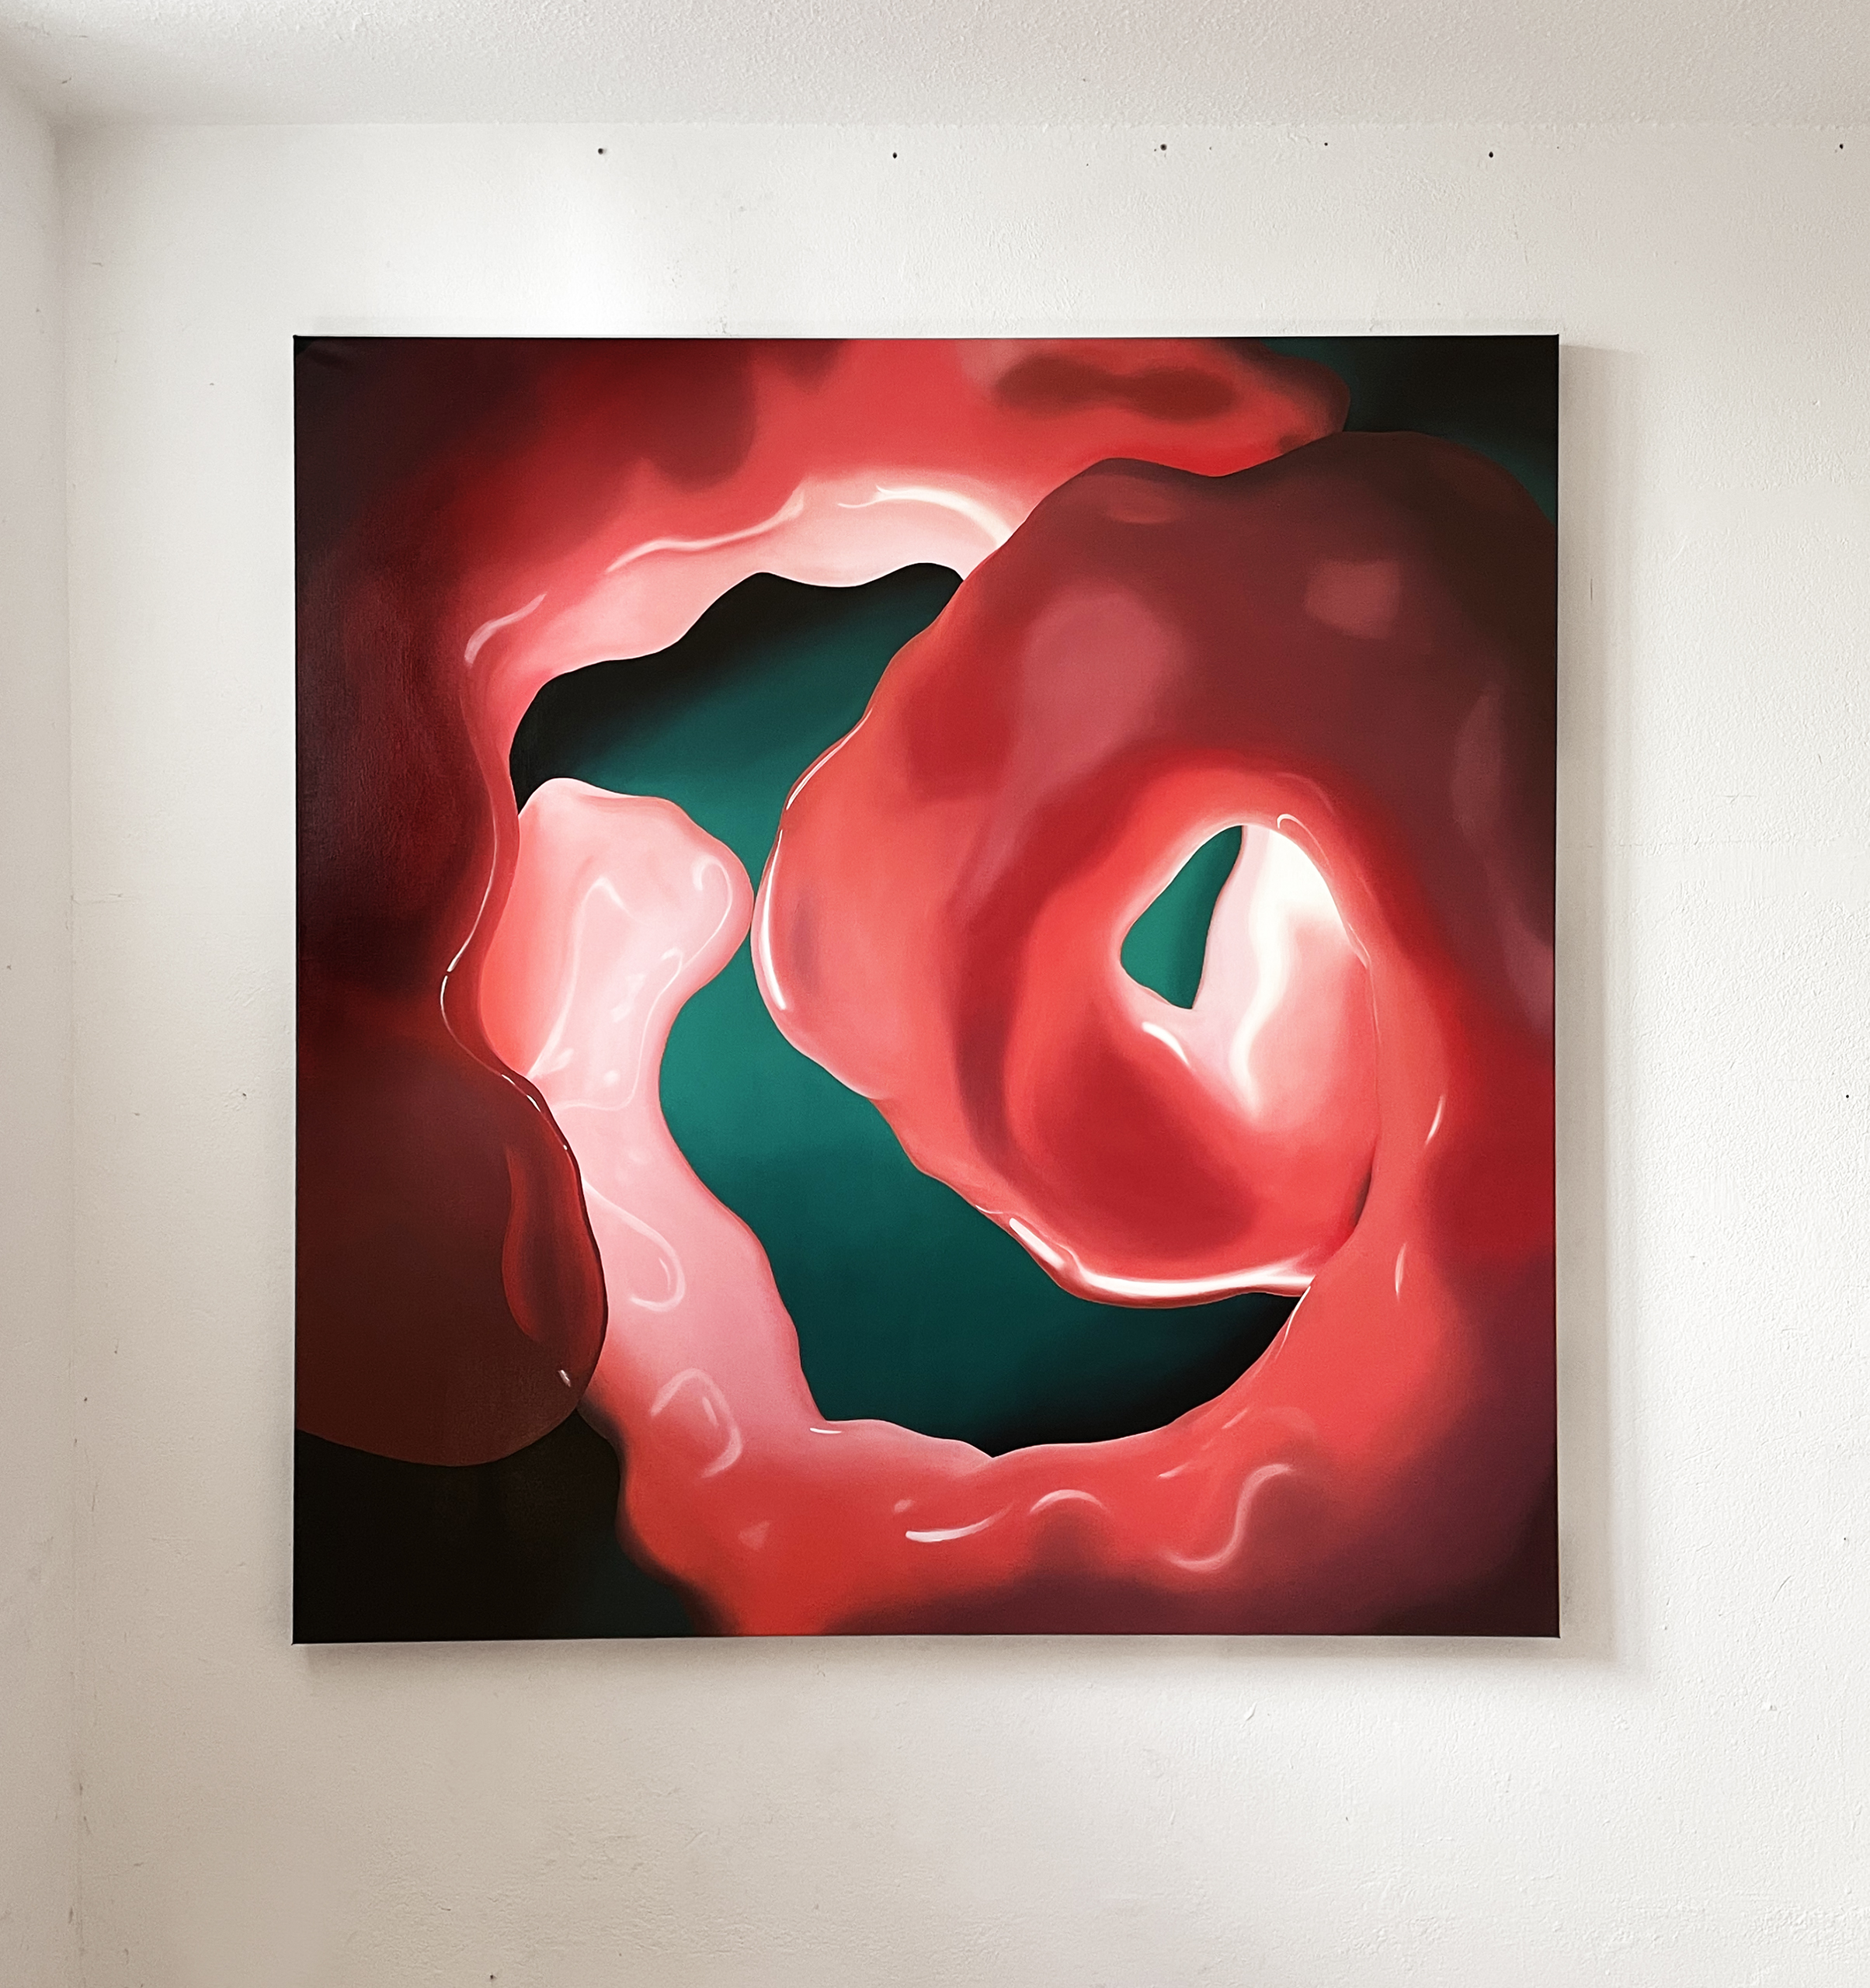 Ju-Schnee_art_kunst_berlin_painting_exhibition_abstract_Boundaries-8